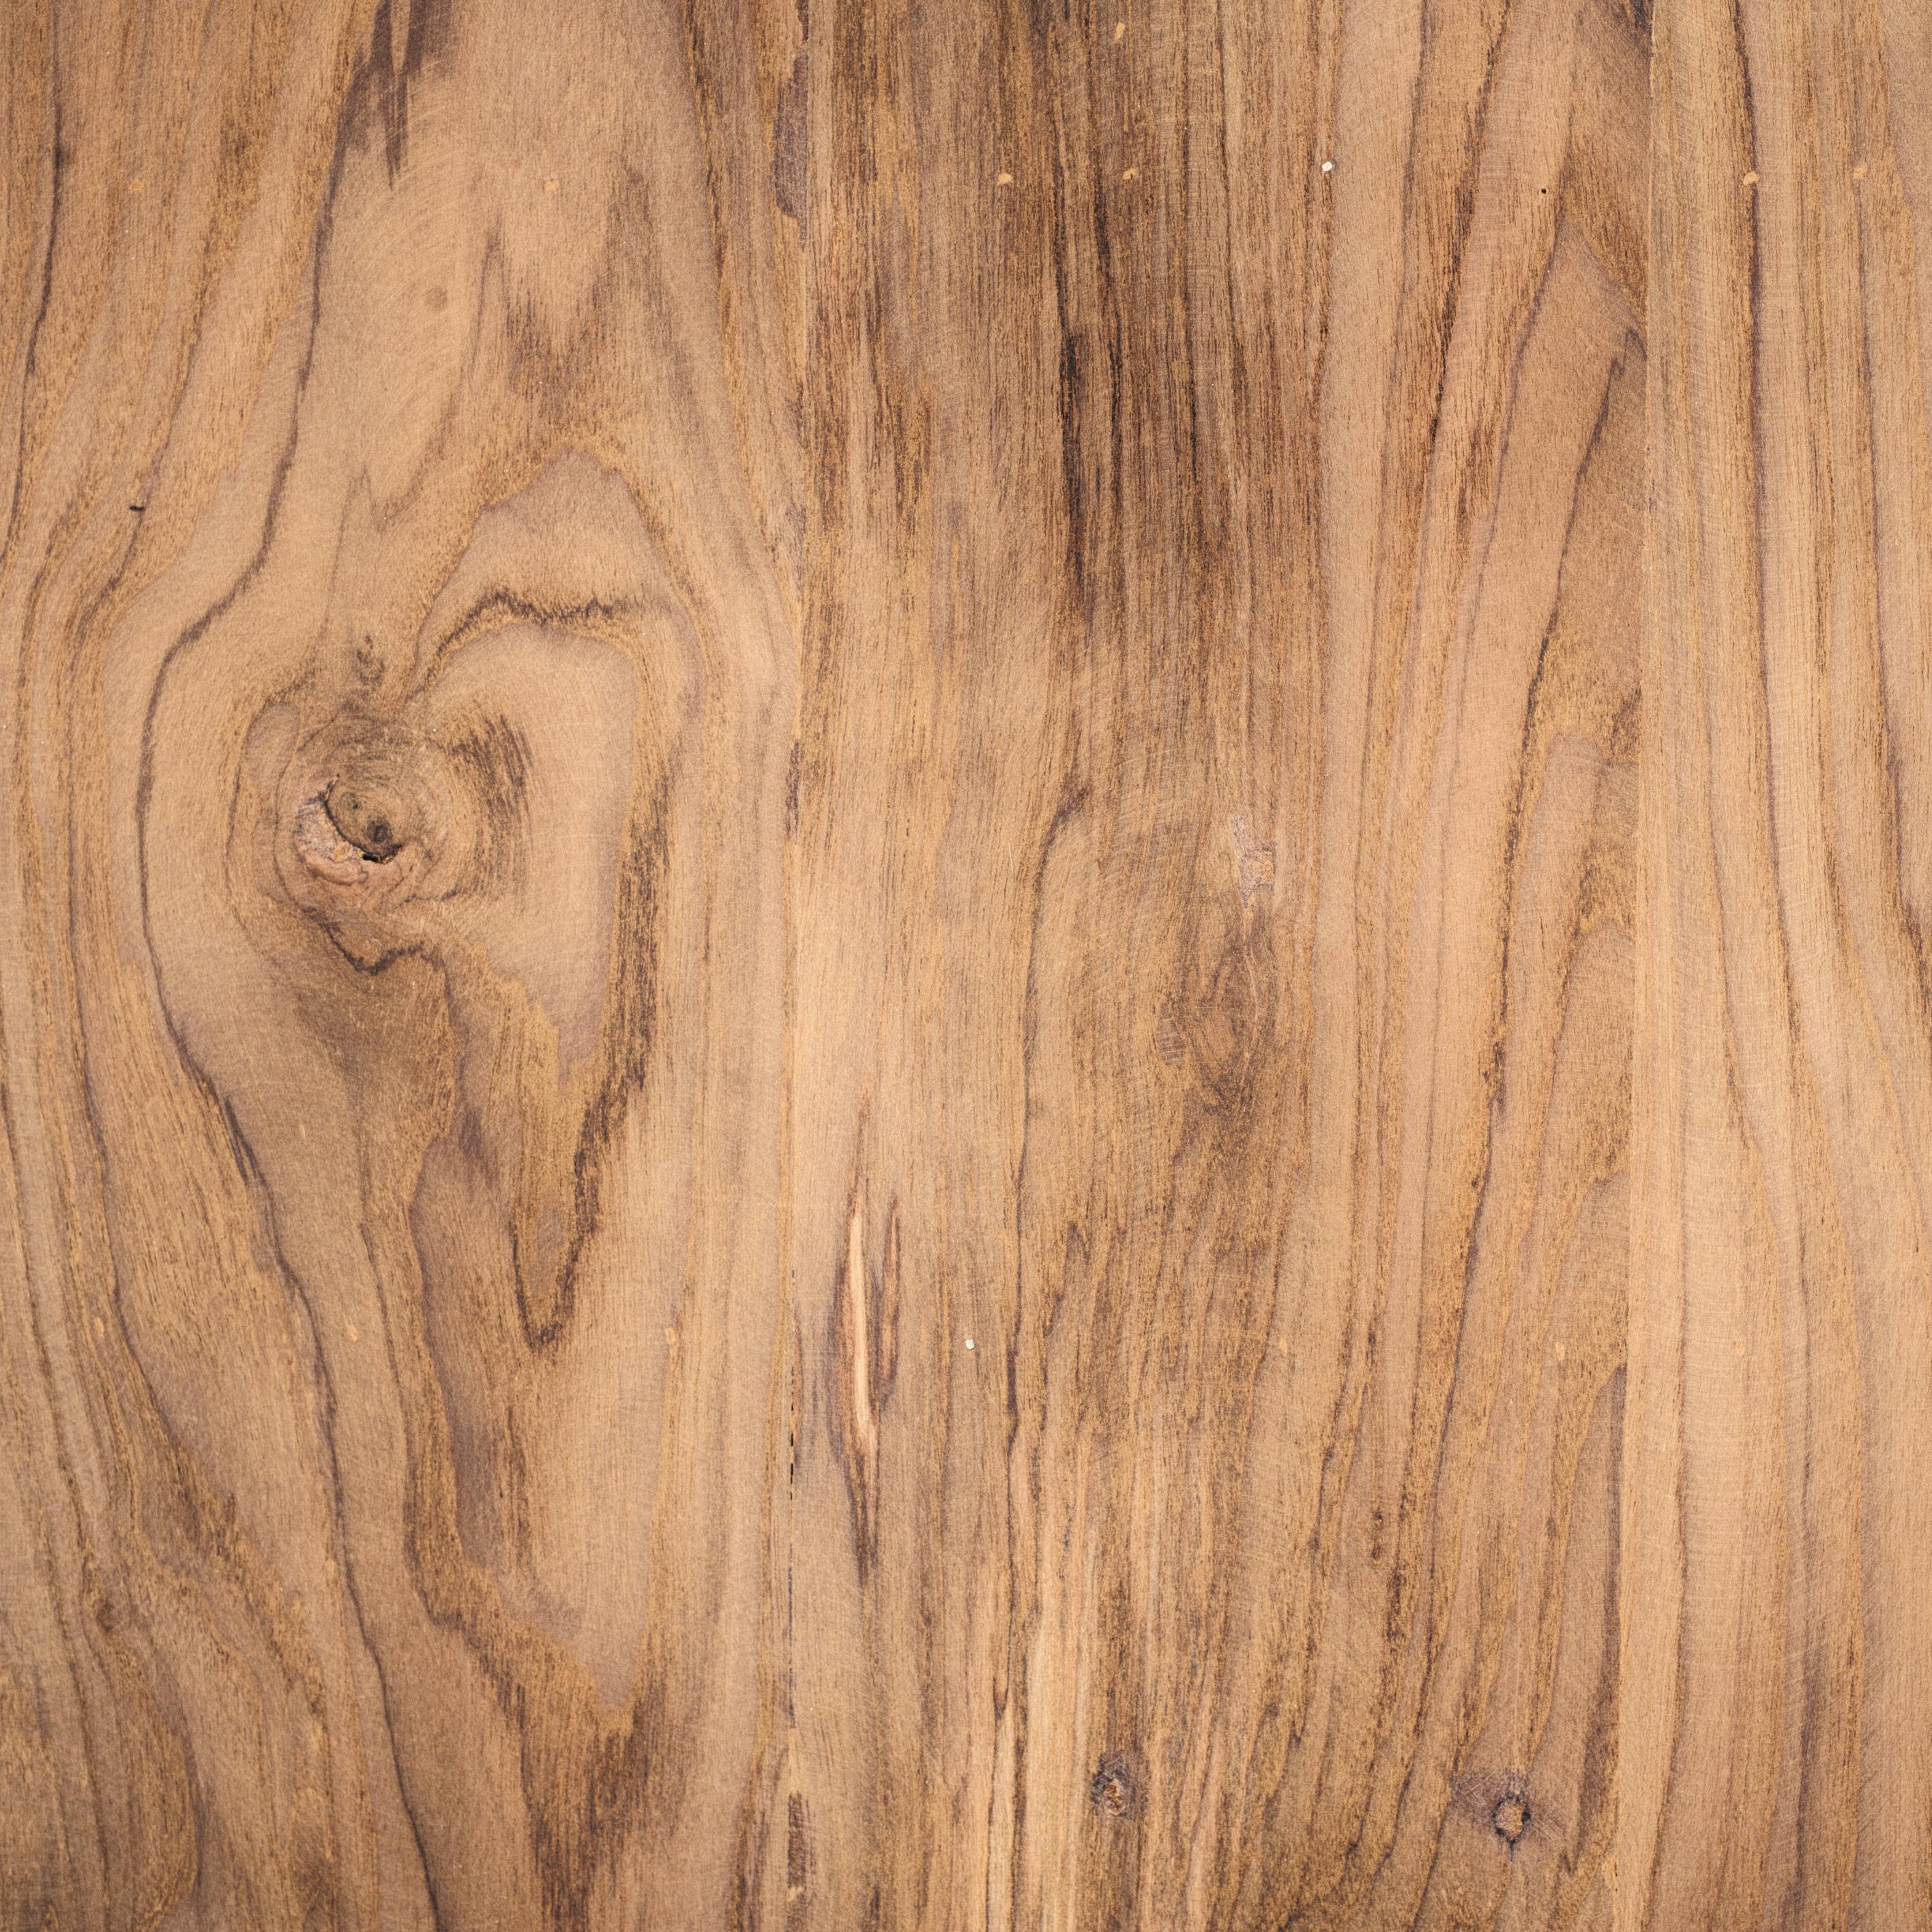 Chất liệu gỗ: Chất liệu gỗ mang lại sự ấm áp, độc đáo và tự nhiên cho nội thất của bạn. Với độ bền lâu dài, gỗ là sự lựa chọn hoàn hảo cho một nơi sống hạnh phúc và lý tưởng. Hãy xem hình ảnh chất liệu gỗ để tìm hiểu thêm về các loại gỗ khác nhau và sự đa dạng của chất liệu này.